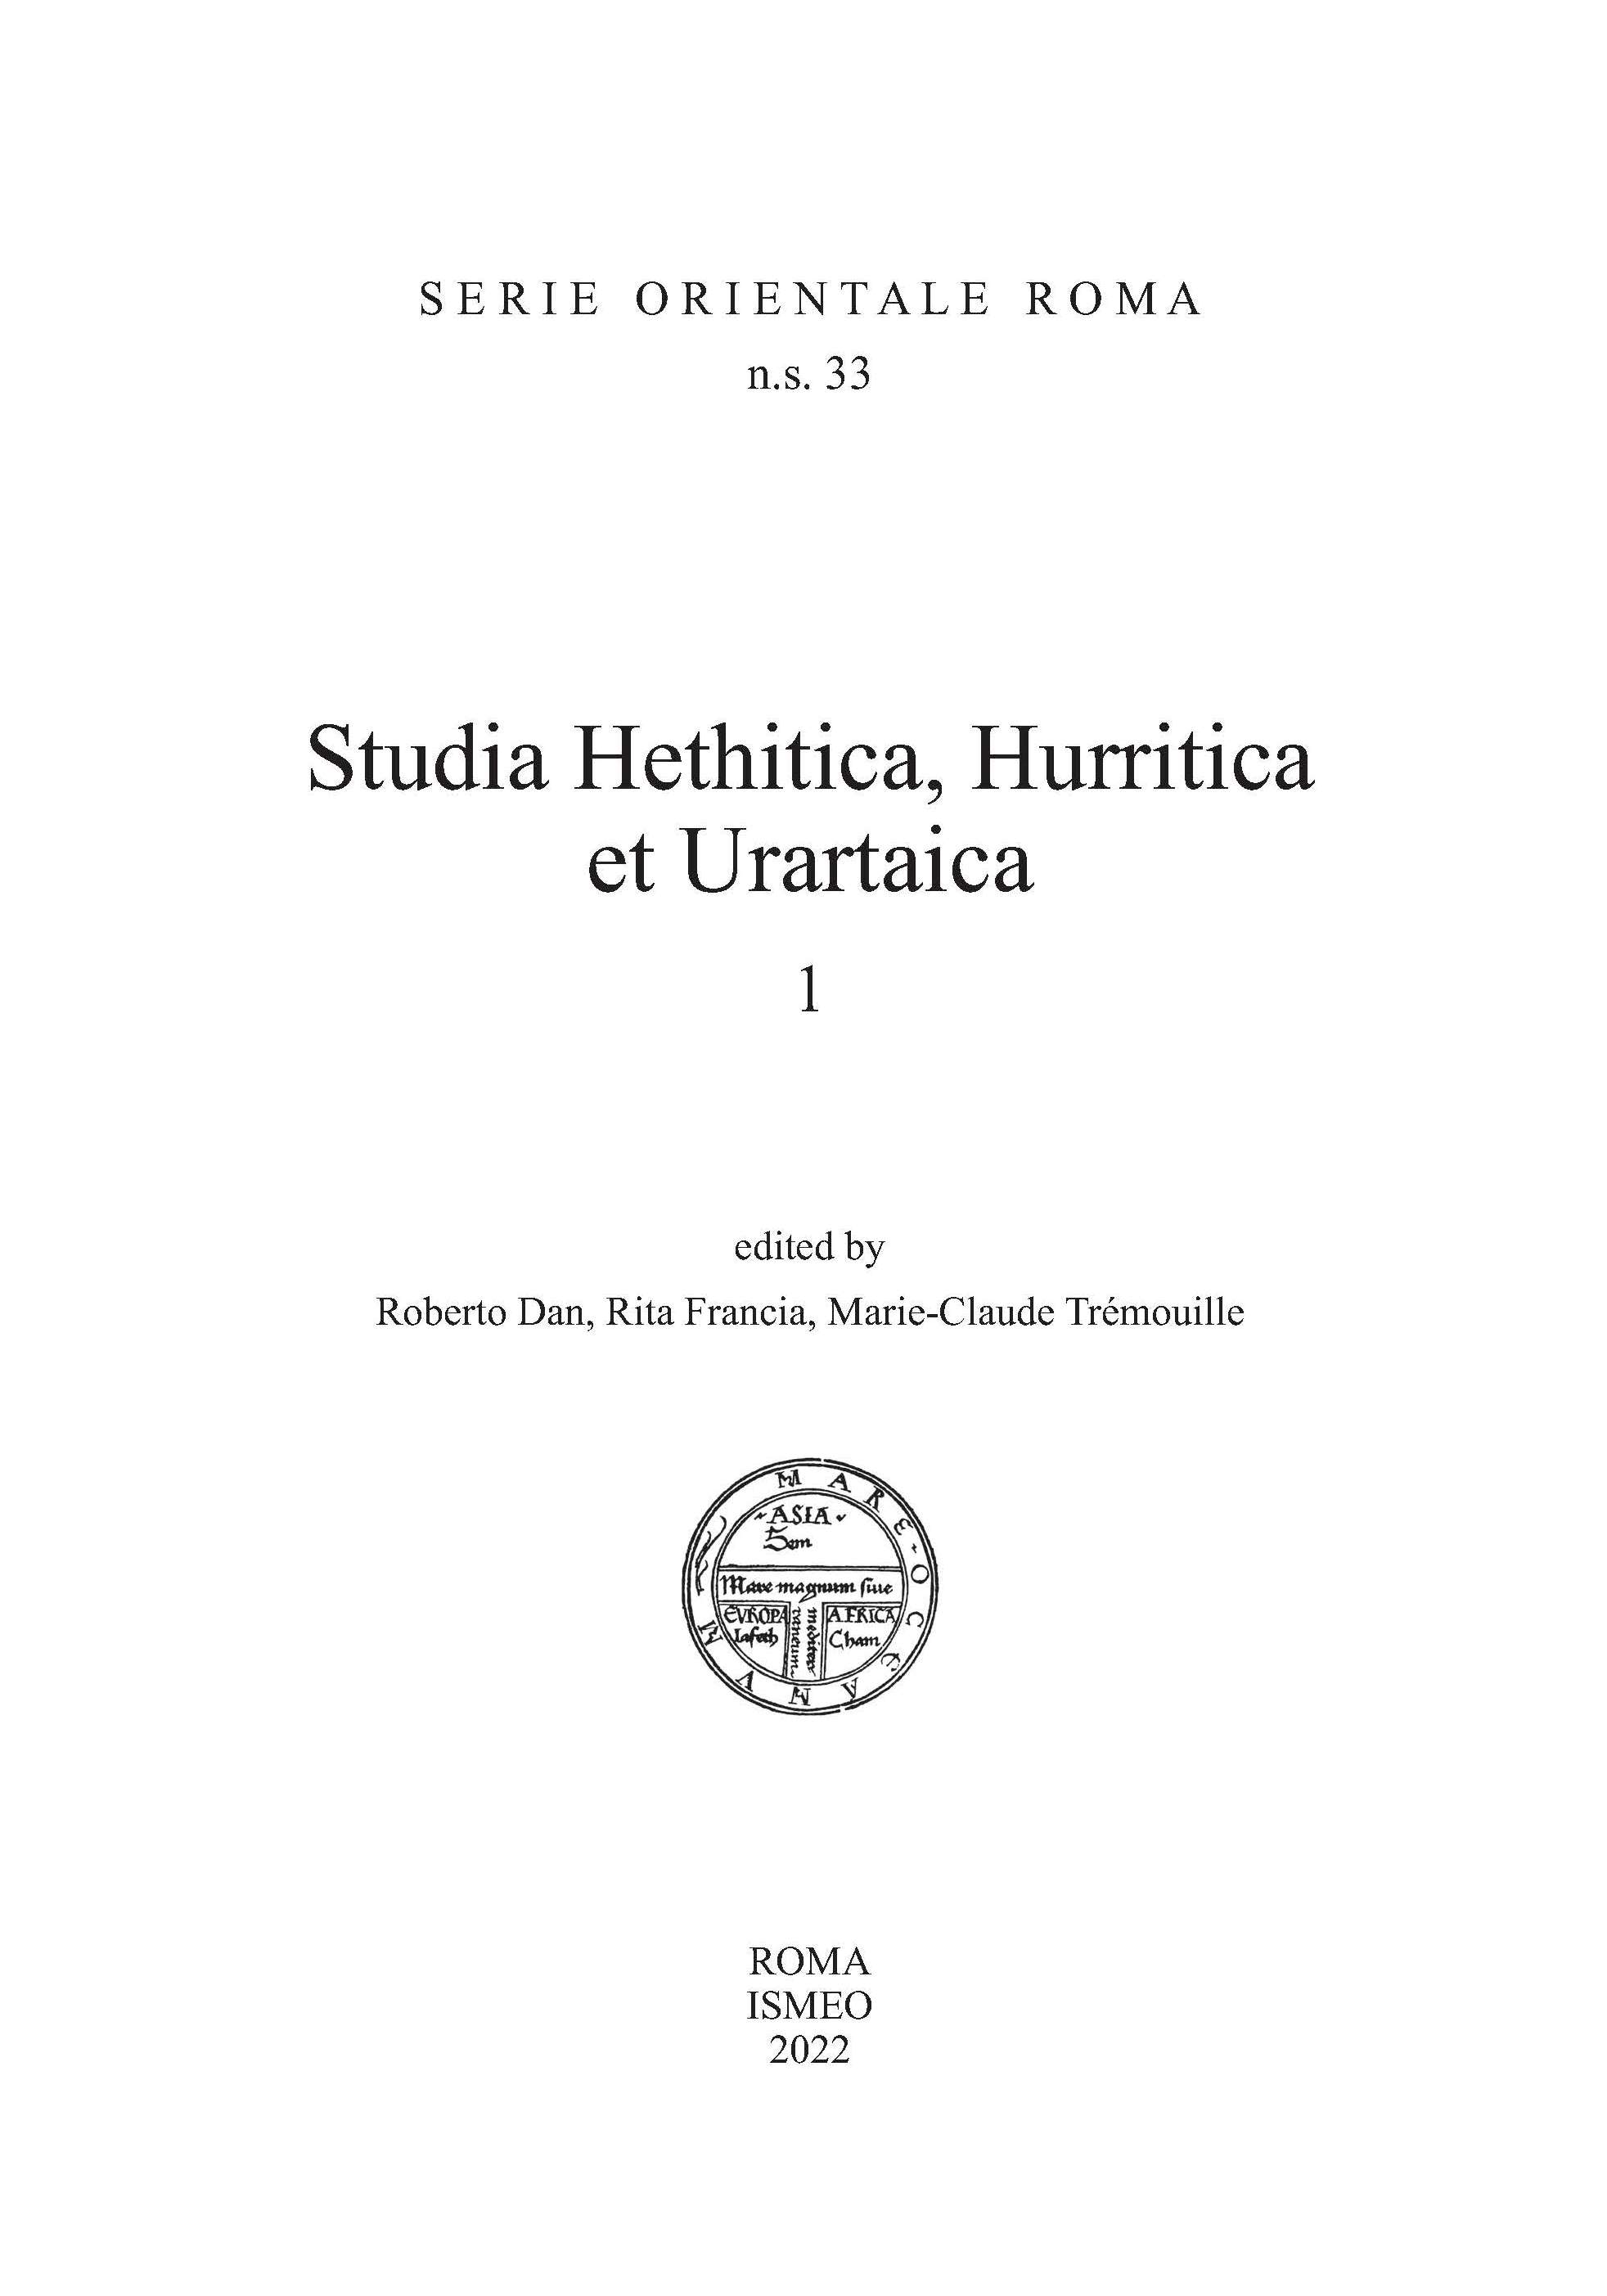 Studia Hethitica, Hurritica et Urartaica 1 - SERIE ORIENTALE ROMA n.s. 33